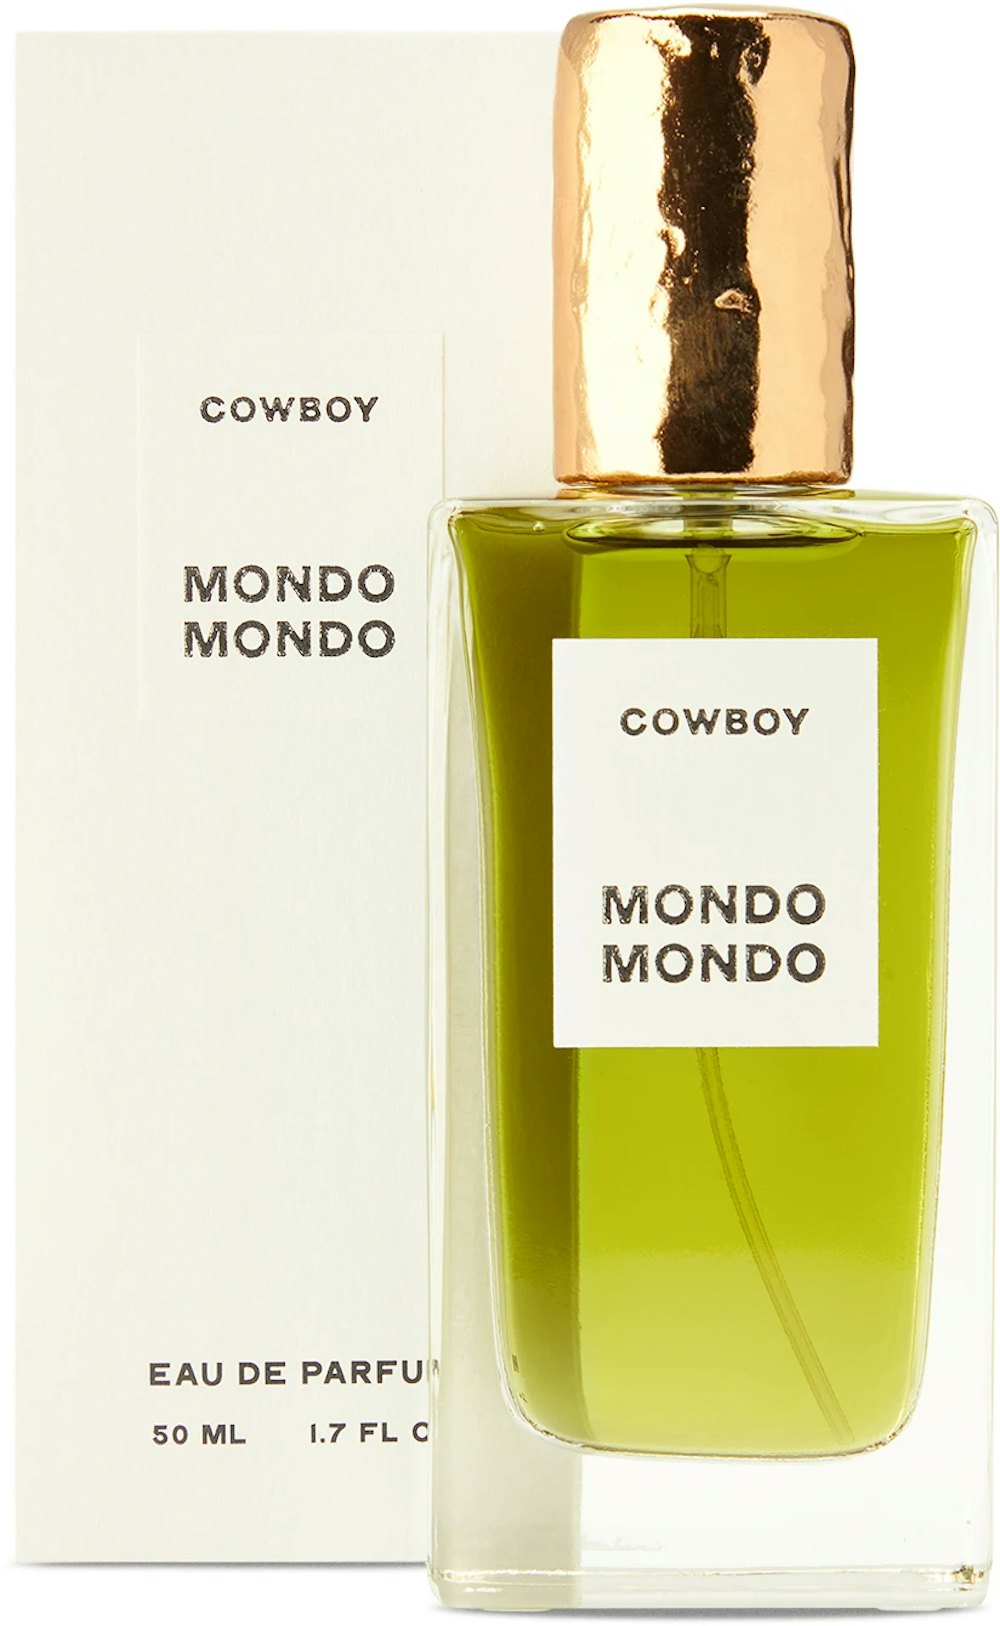 MONDO MONDO Cowboy Eau de Parfum